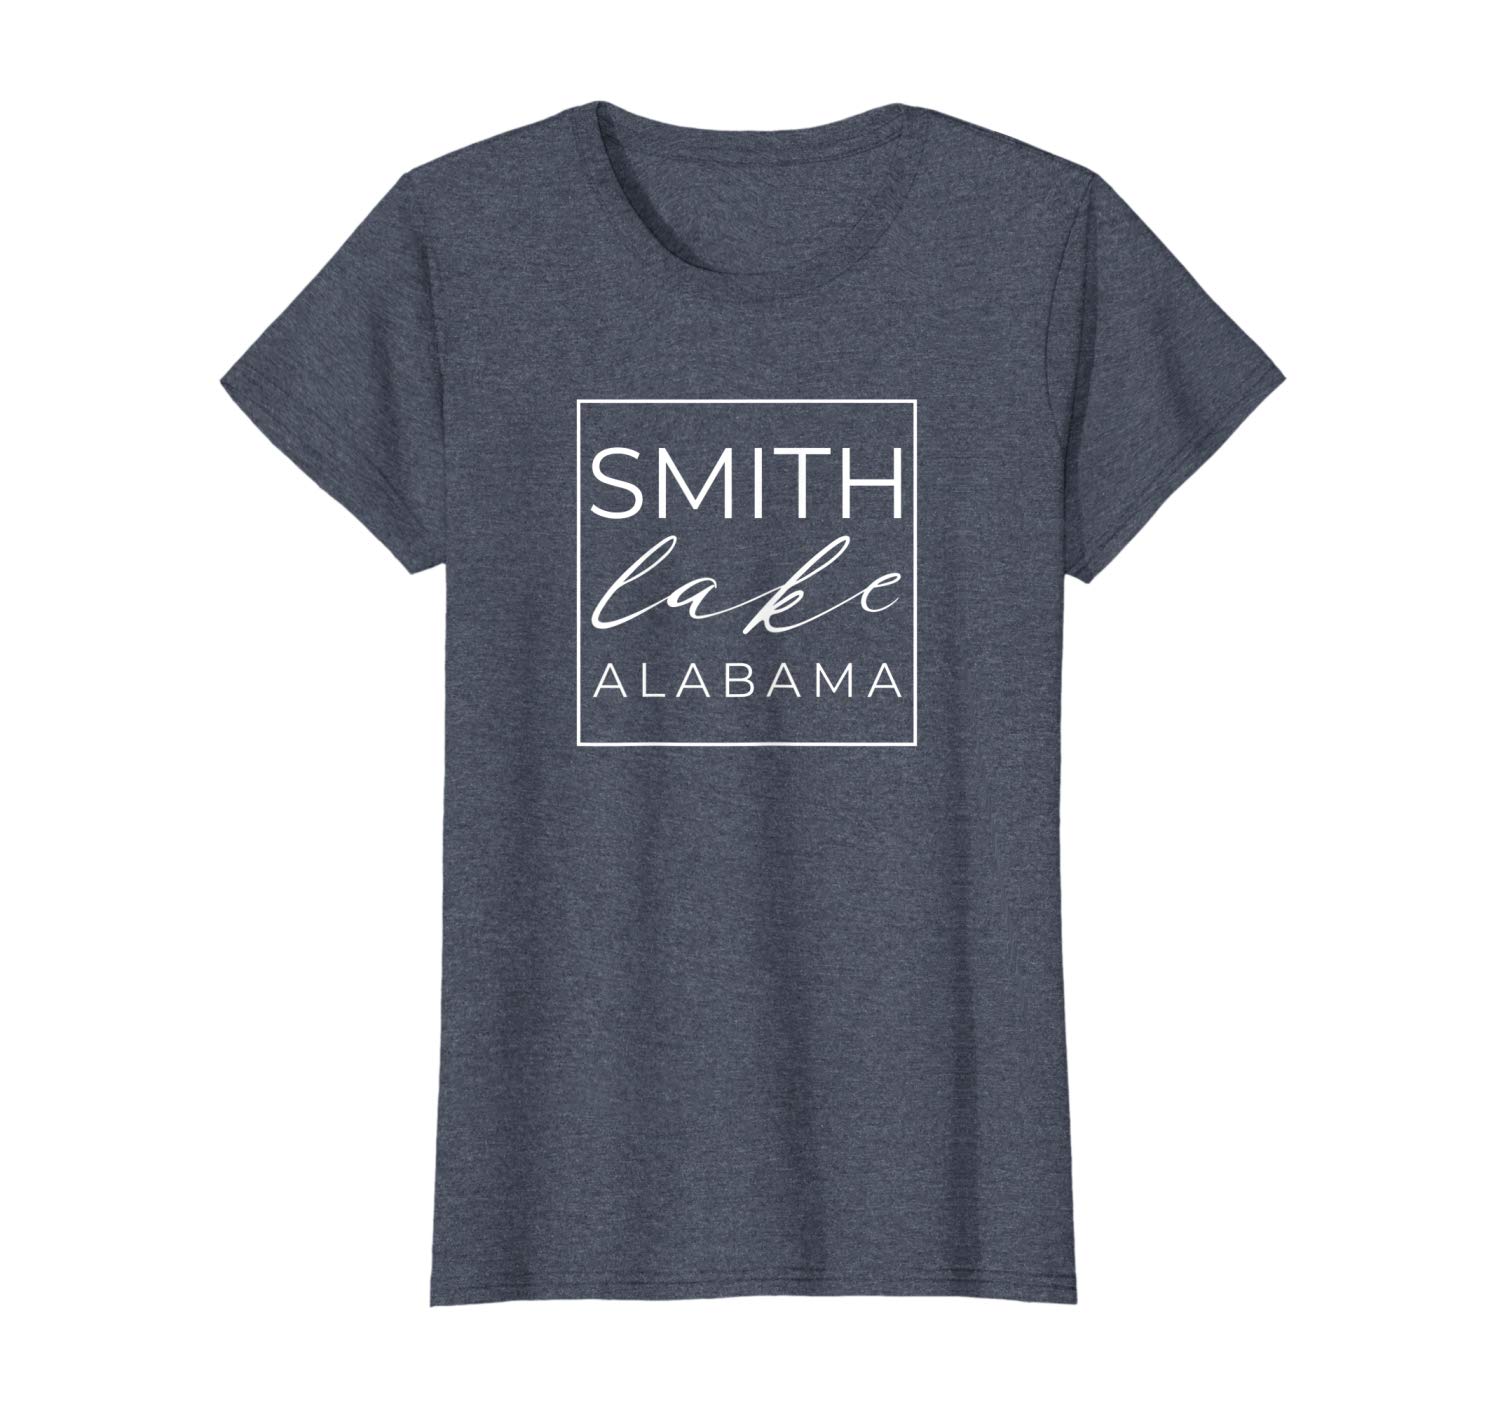 Smith Lake Tshirt